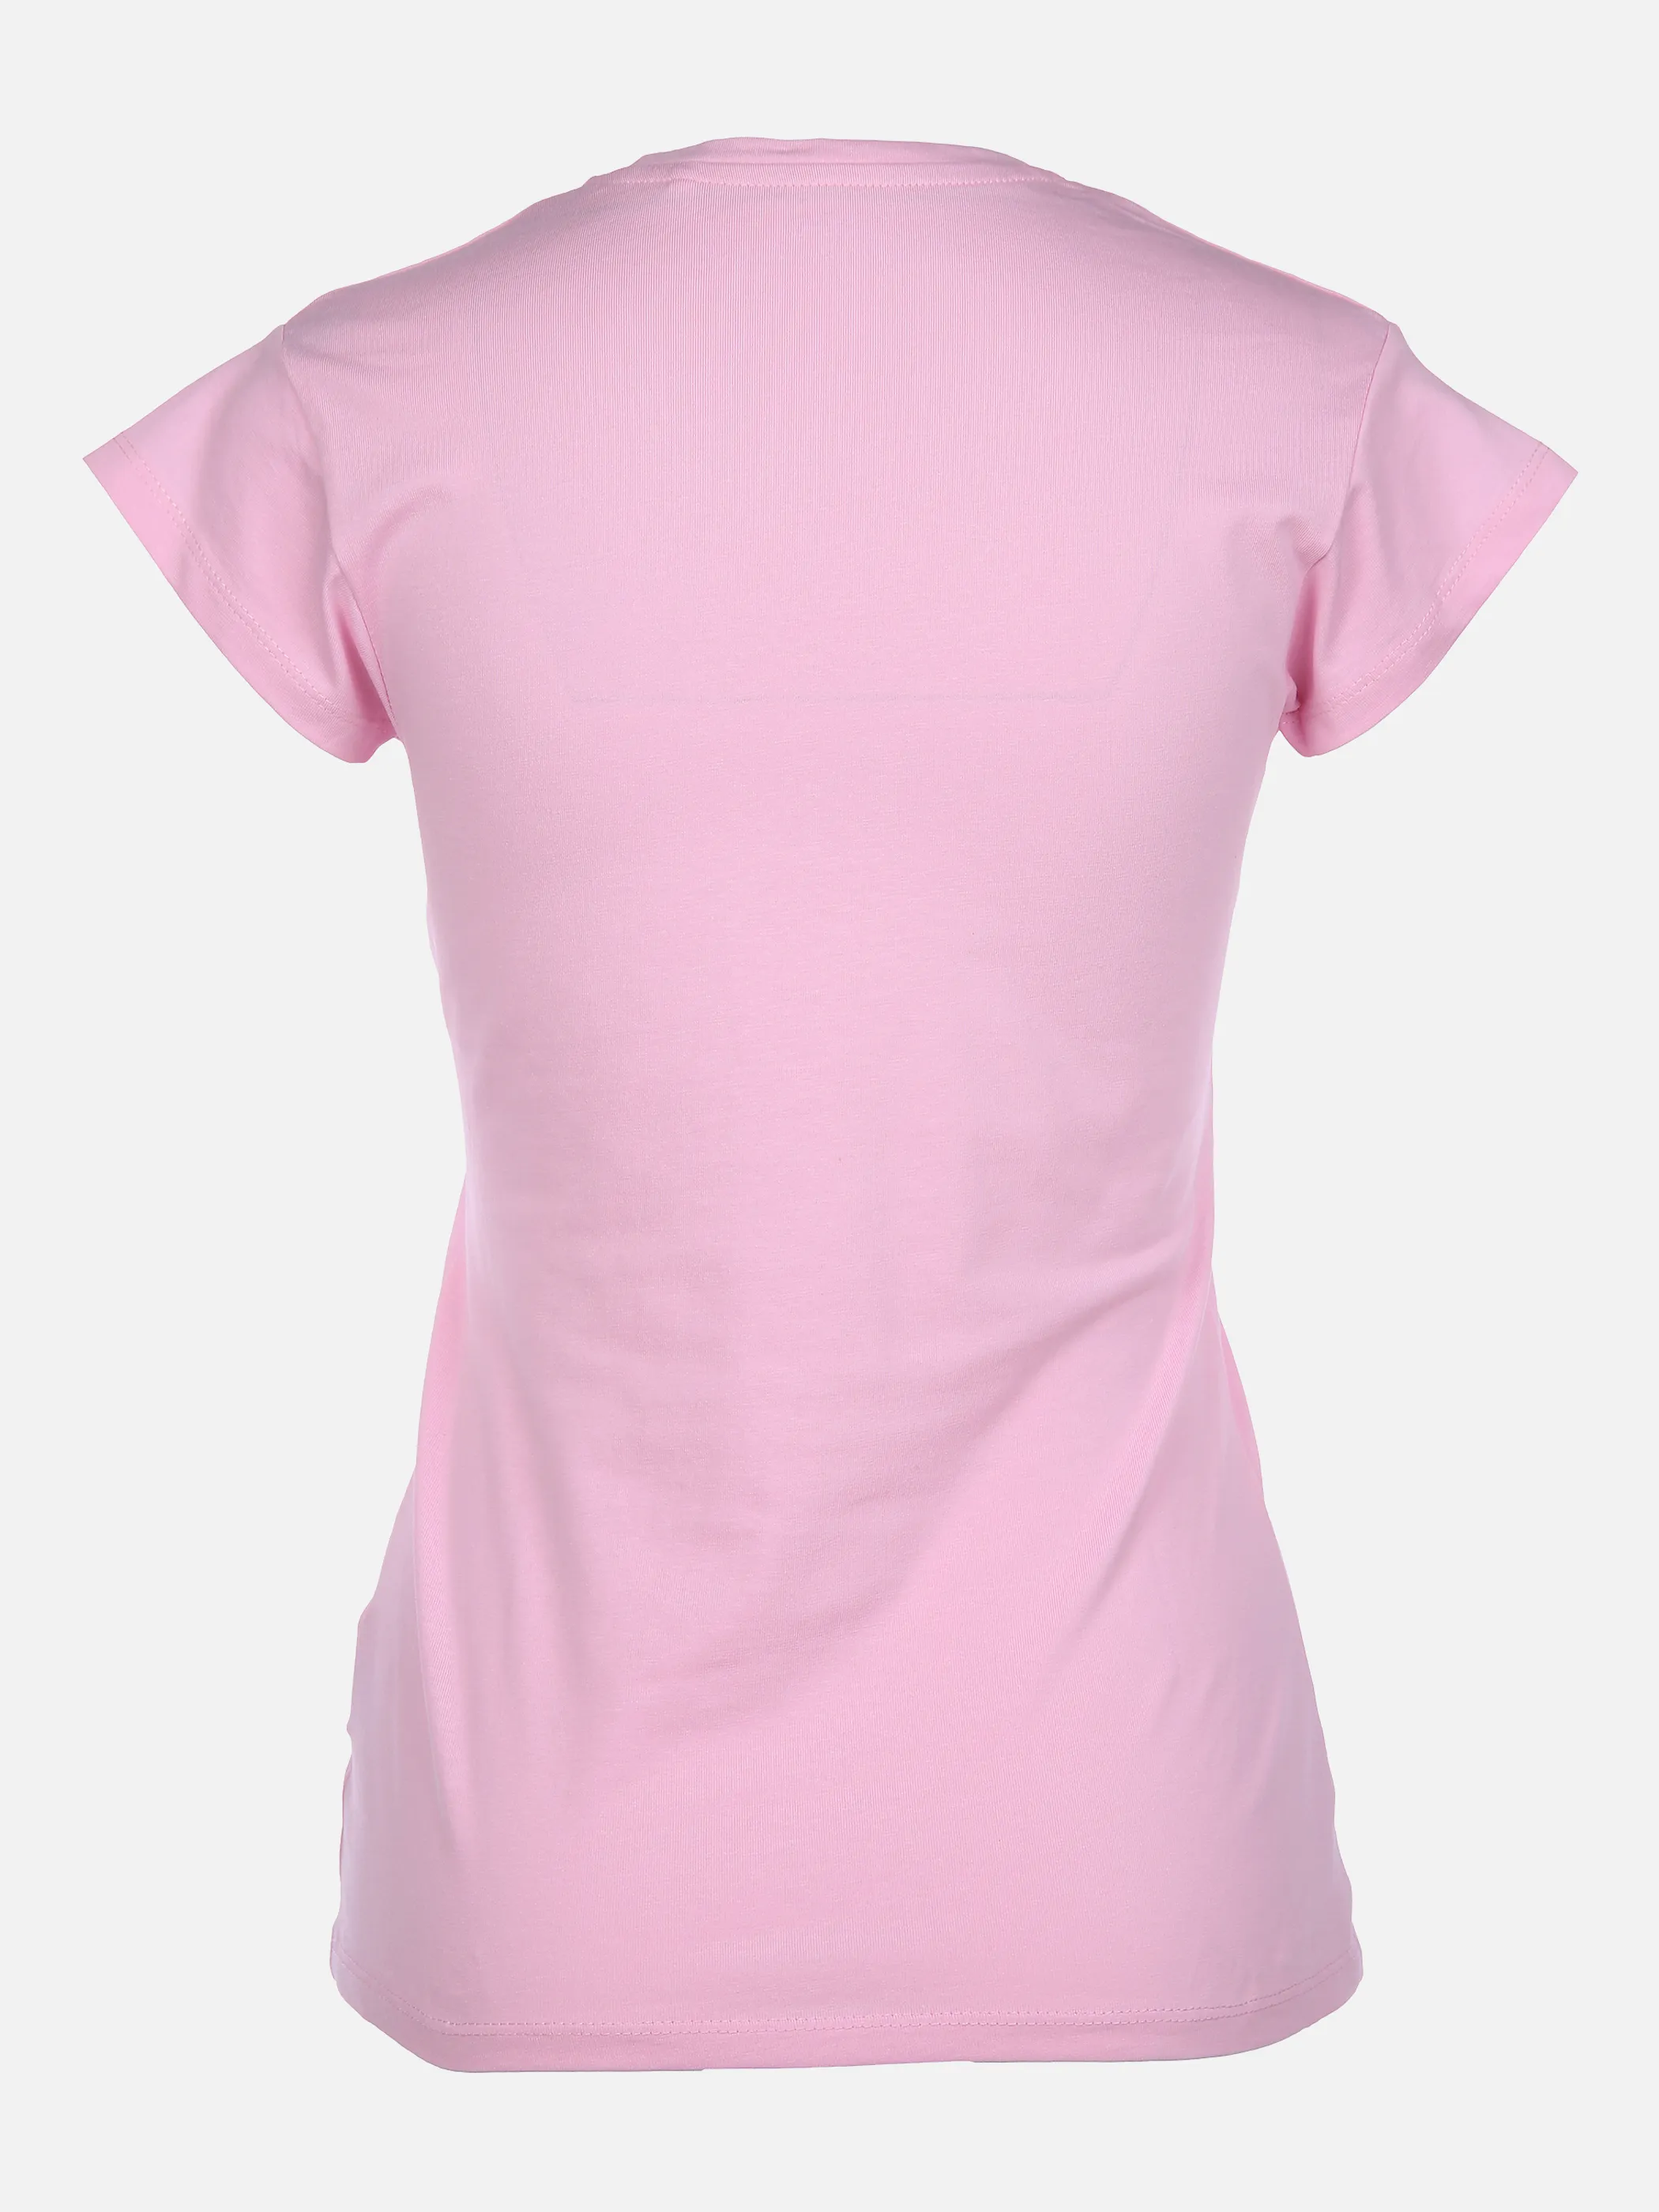 IX-O YF-Da-T-Shirt, V-Neck Pink 863770 14-2710TCX 2